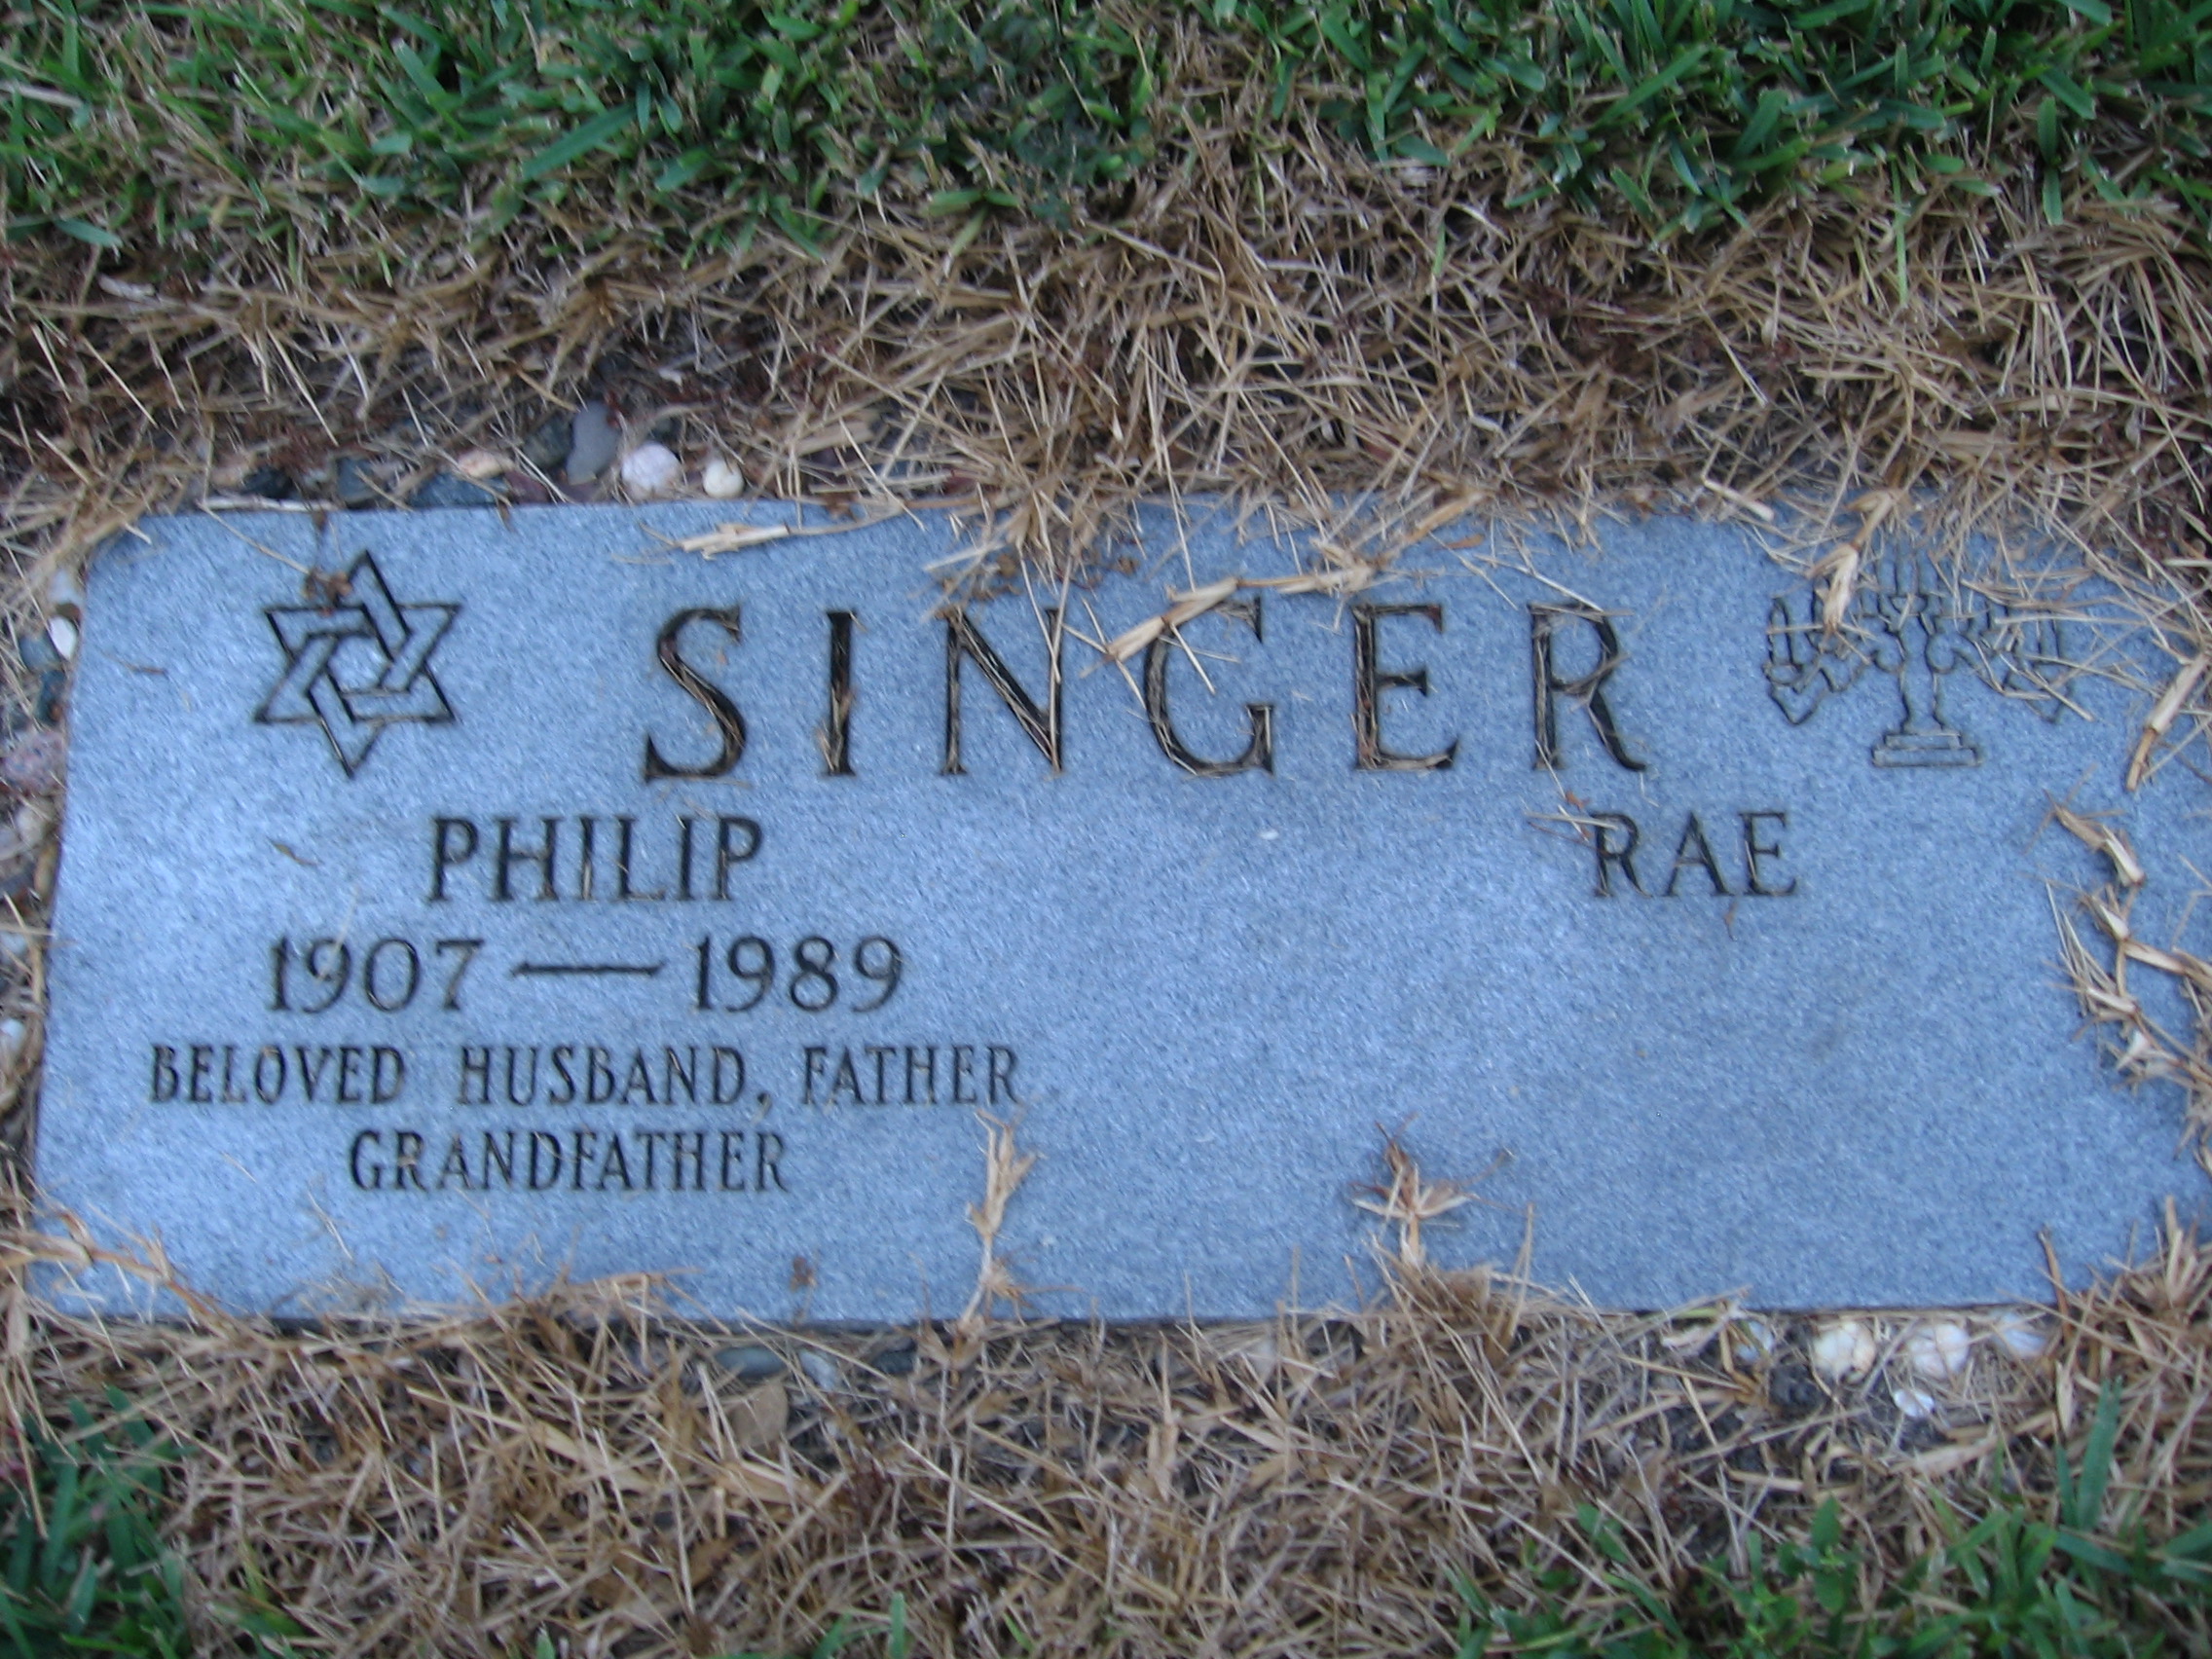 Philip Singer